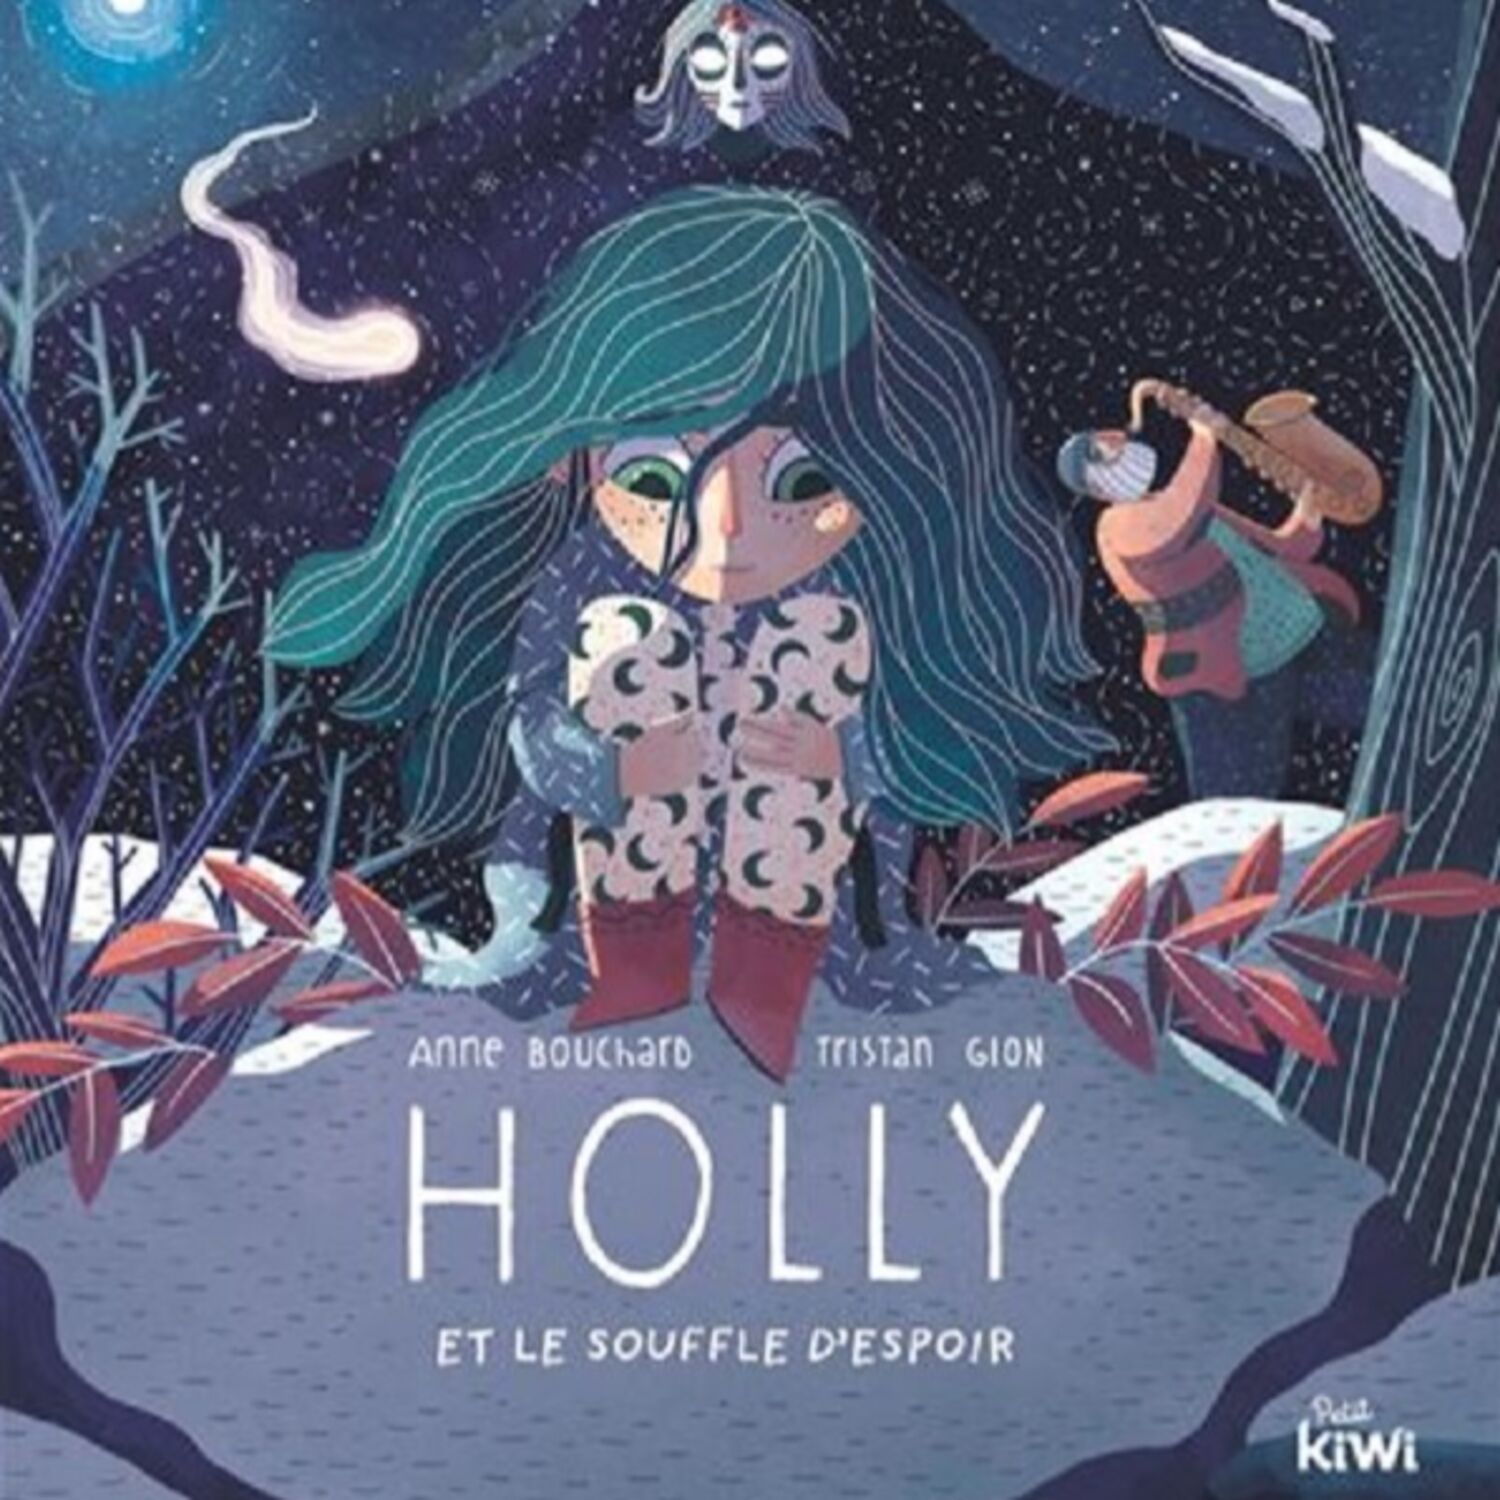 Holly et le souffle d'espoir : un livre pour expliquer tout en douceur le deuil aux enfants